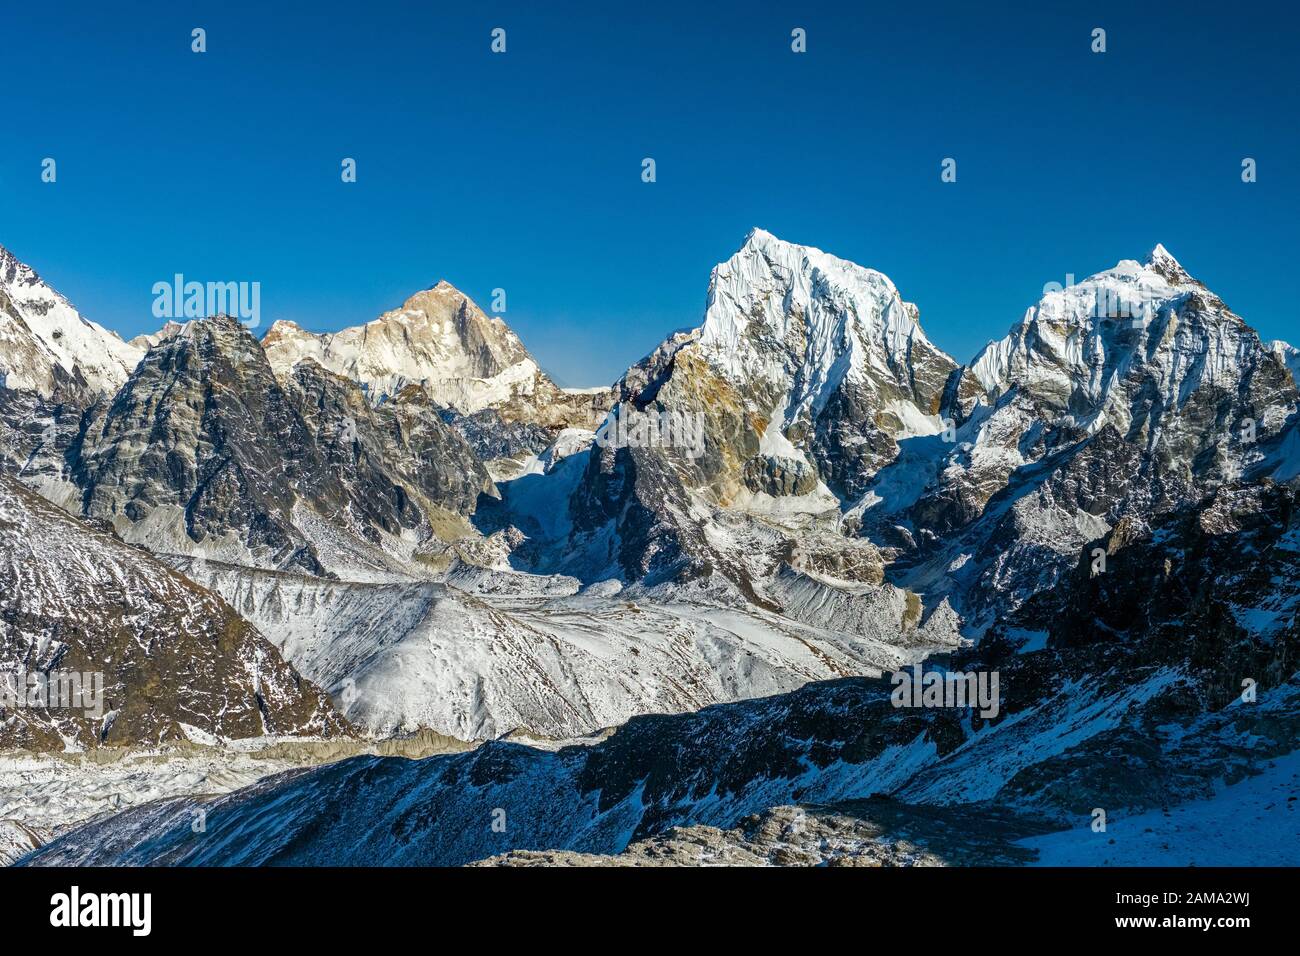 Vue sur les montagnes de l'himalaya y compris le Cholatse du Renjo La, sur la passe de trois dans le Trek Népal Himalaya Banque D'Images